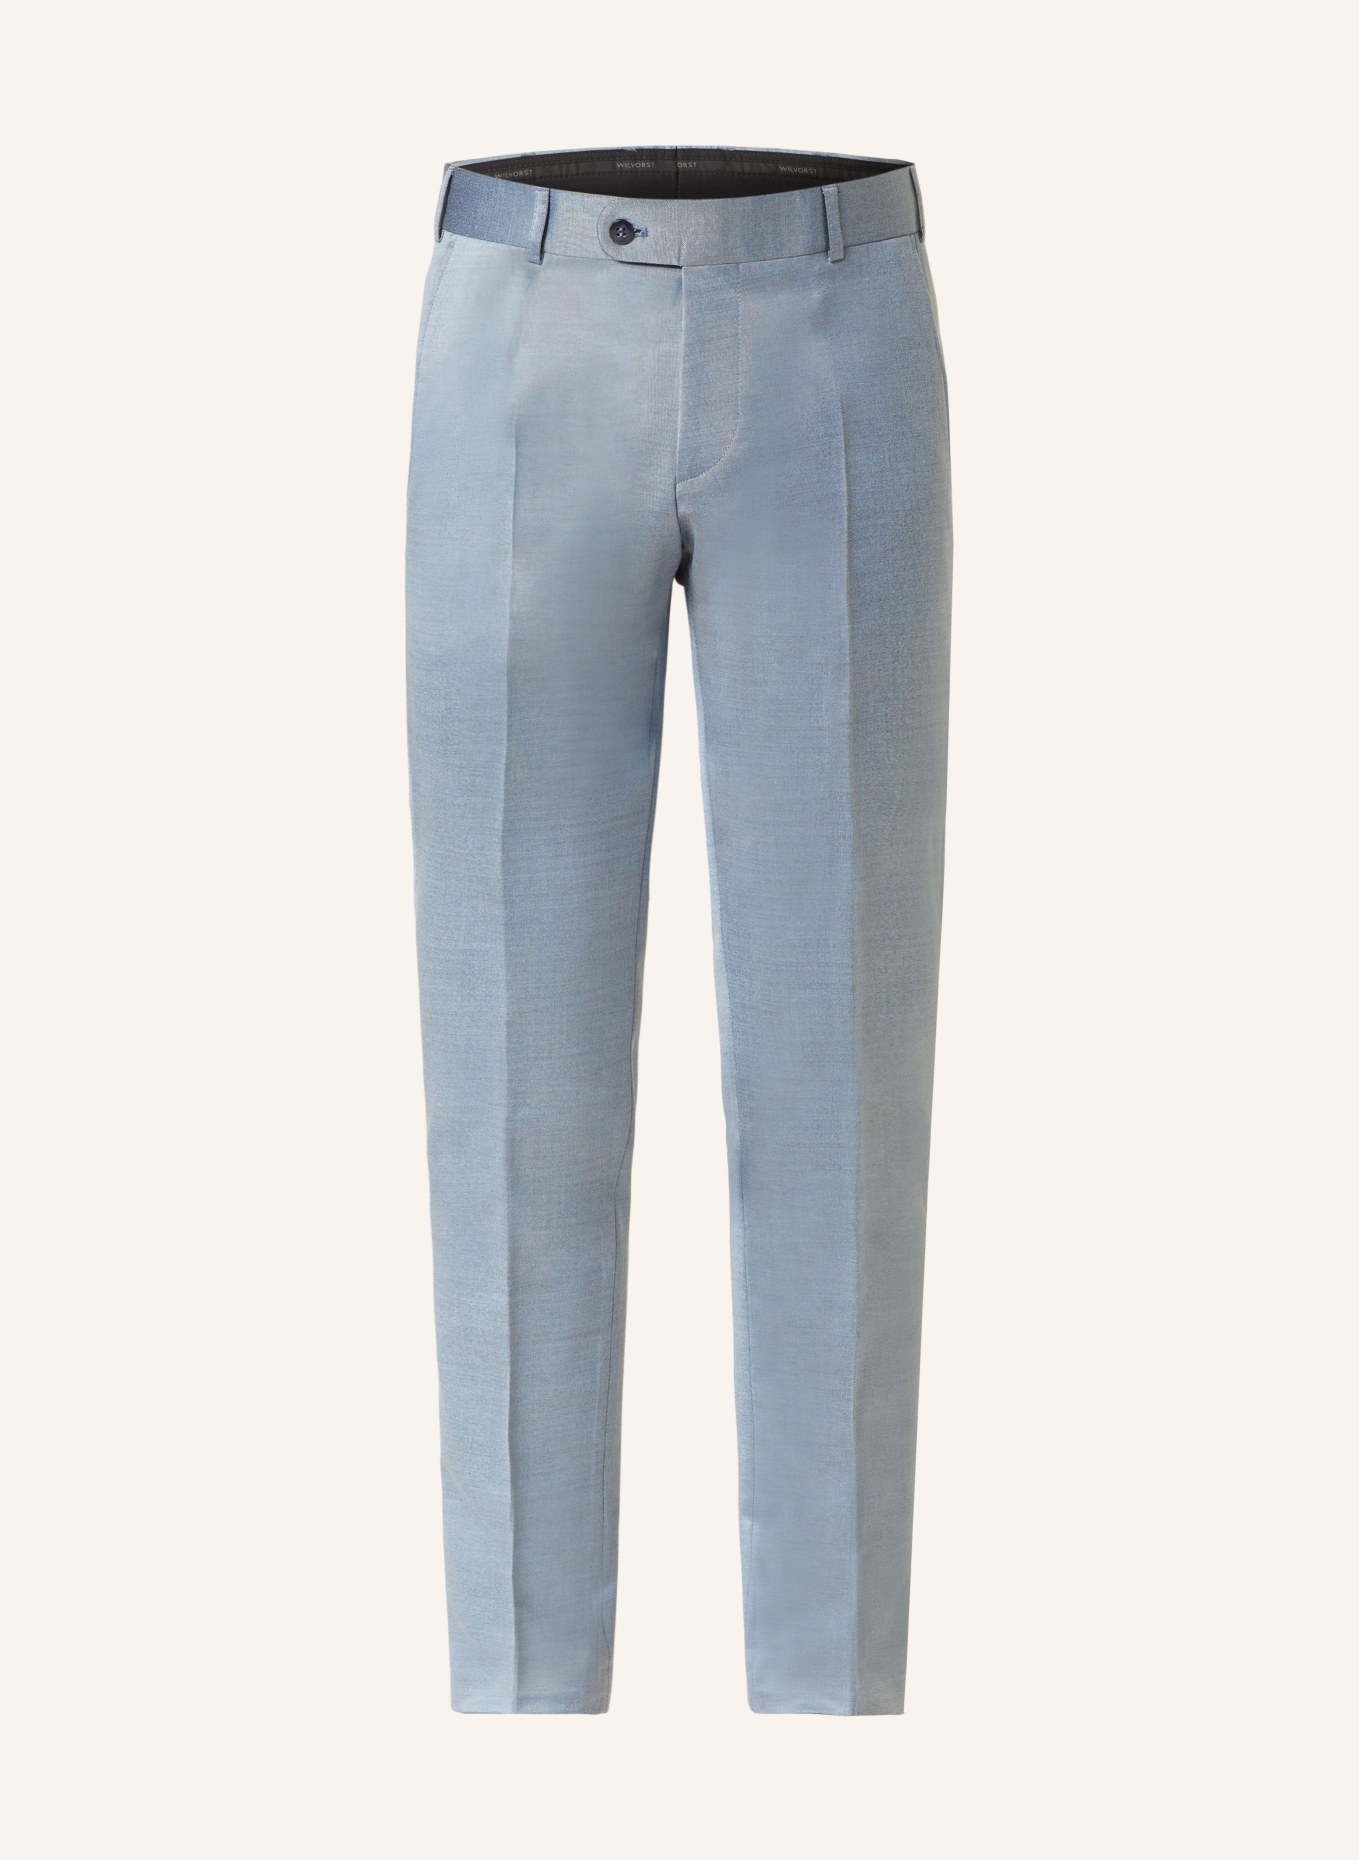 WILVORST Suit trousers slim fit, Color: 036 hell Blau (Image 1)